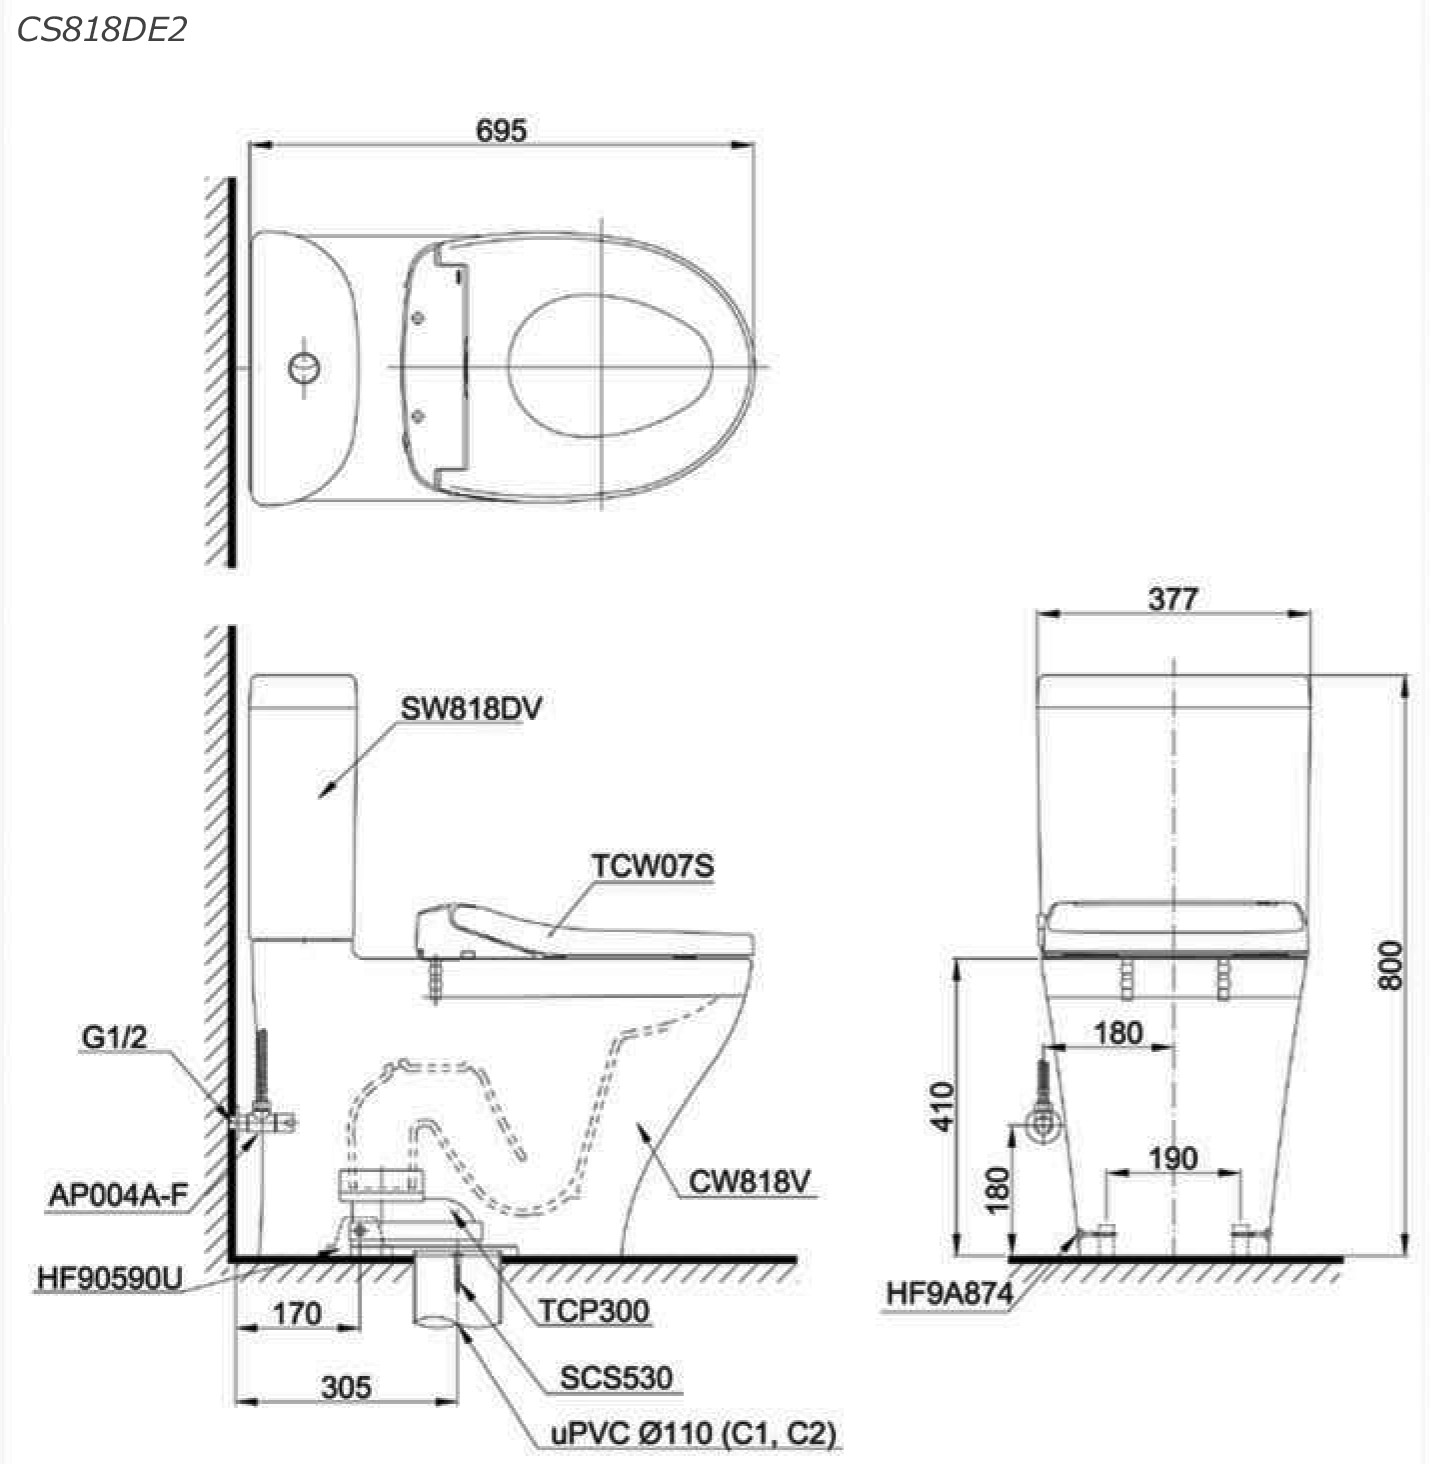  Bản vẽ kỹ thuật chính xác nhất cho bàn cầu CS818DE2 tại Minh Phương Showroom
